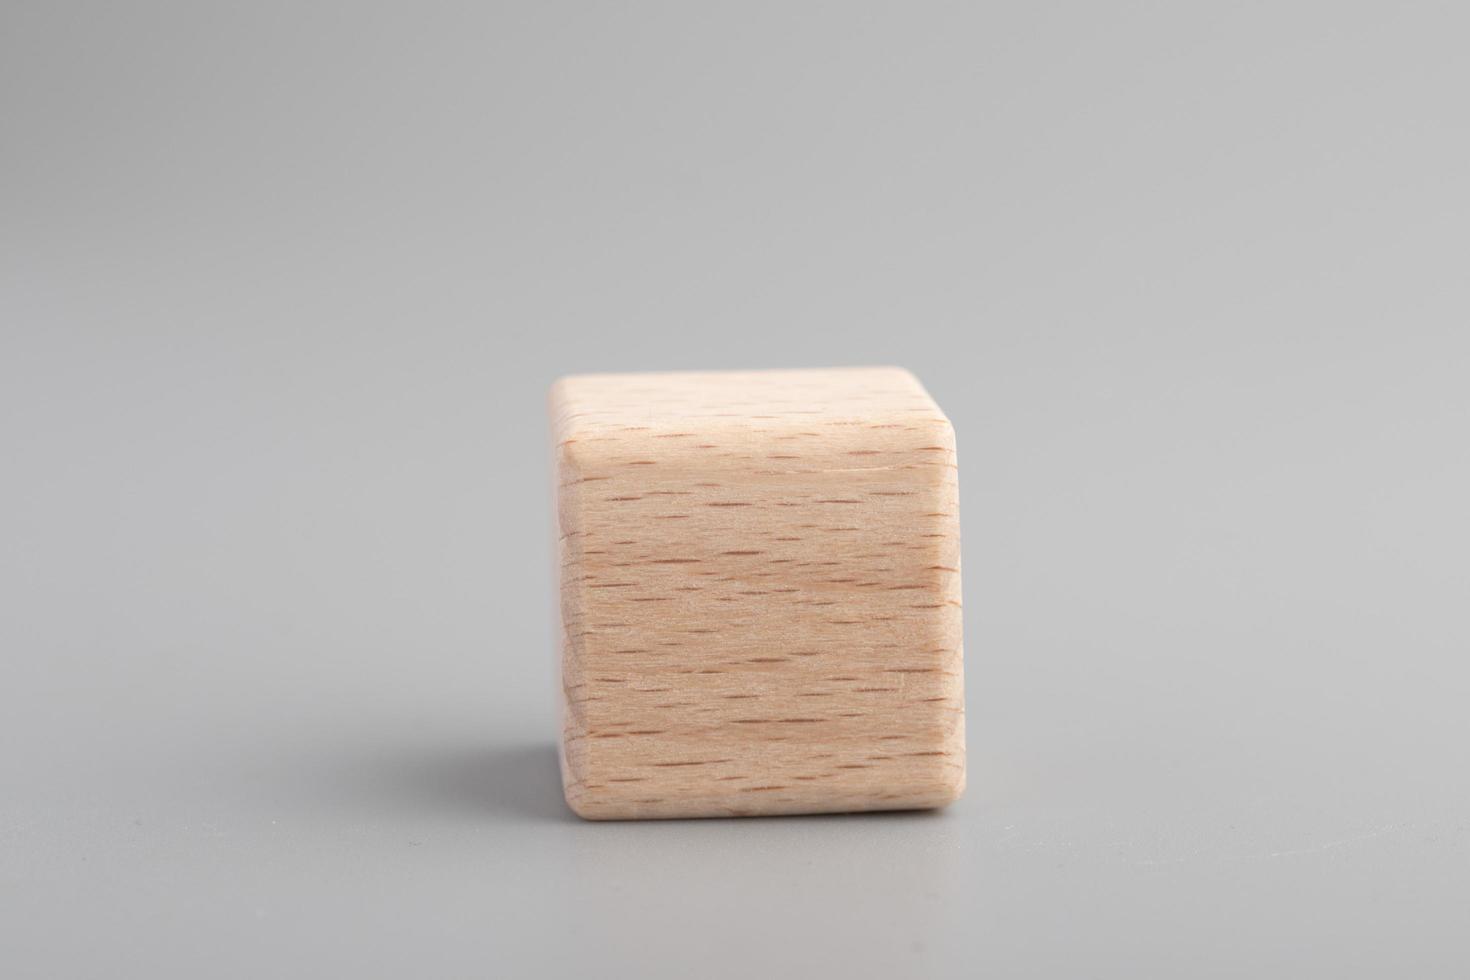 dados de madeira vazios simples, um cubos em branco feitos de madeira com um elemento central, fundo cinza. espaço de cópia, espaço de logotipo no meio. foto